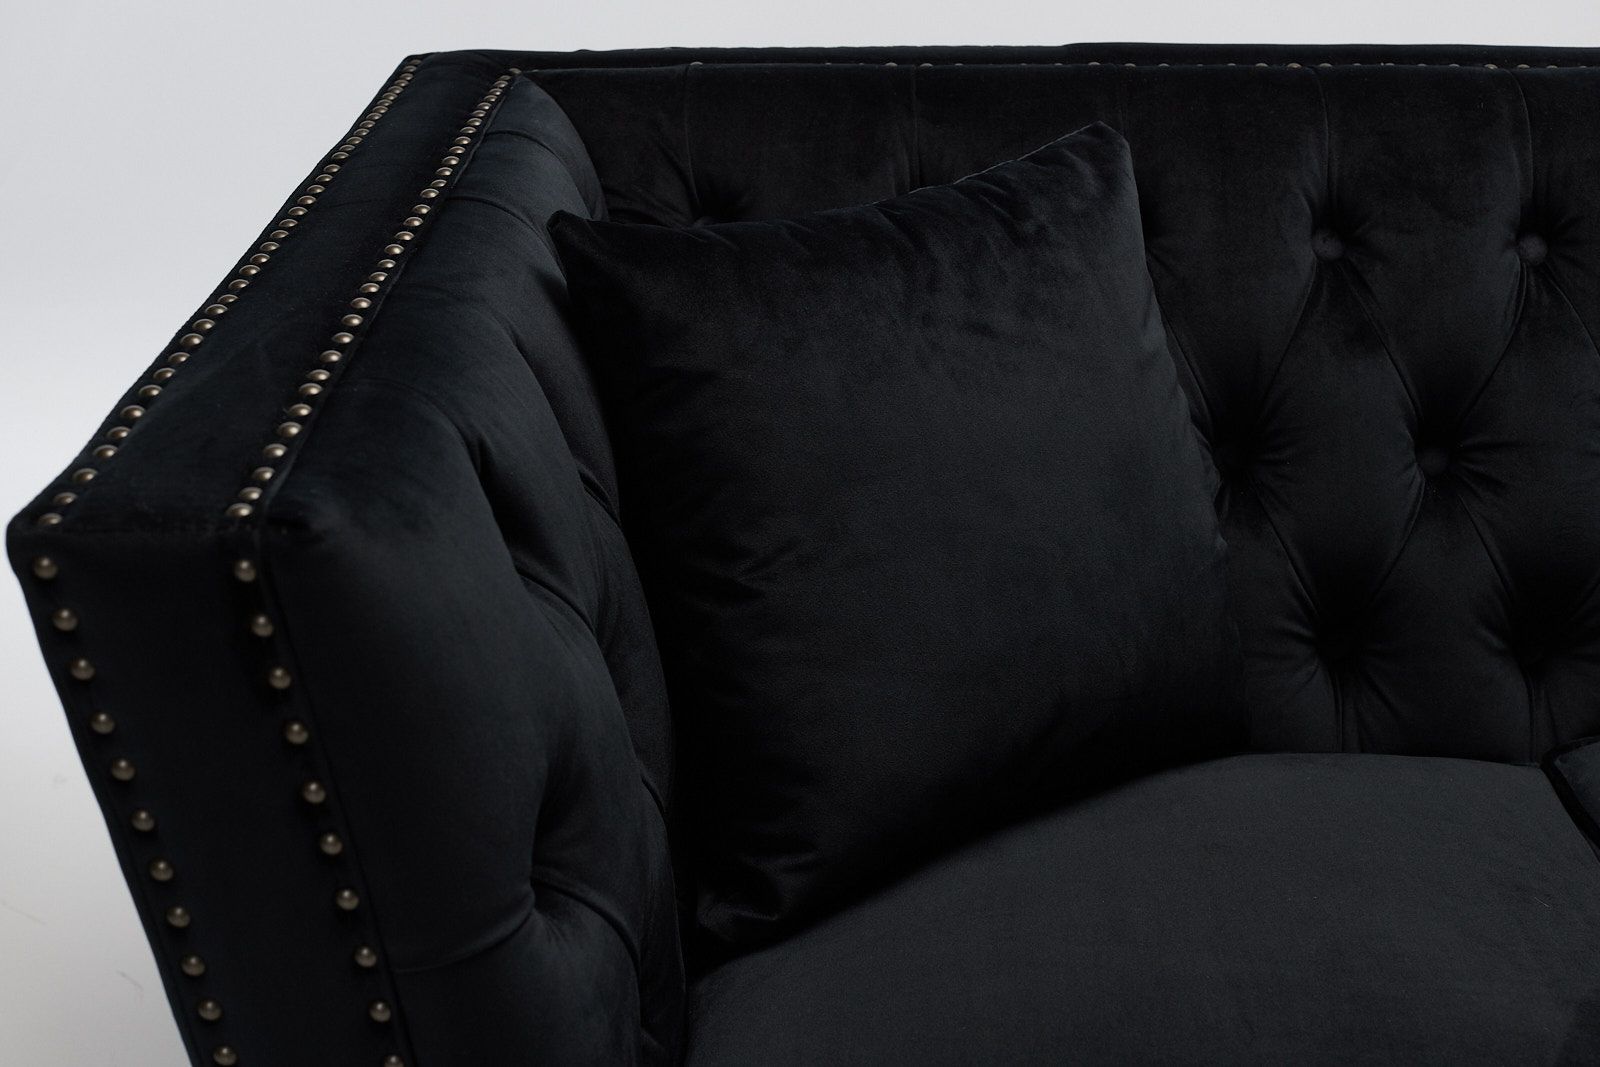 Chloe – 2 Seater Modern Chesterfield Sofa, Black Velvet | Furniture Outlet Within Black Velvet 2 Seater Sofa Beds (Photo 5 of 15)